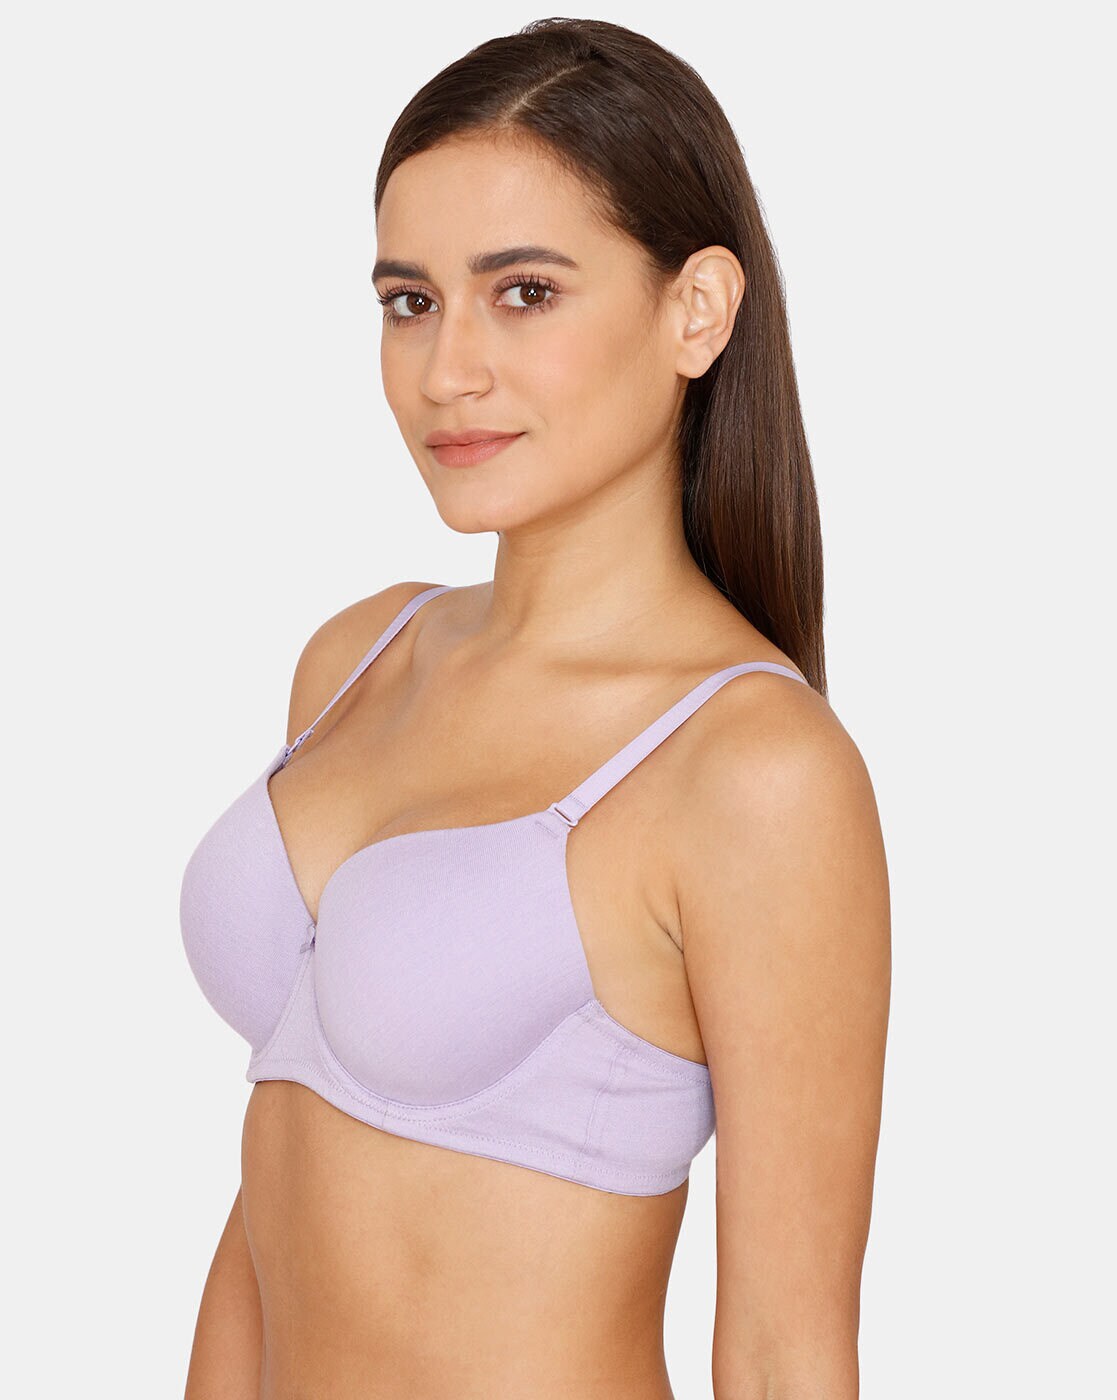 Buy Purple Bras for Women by Rosaline Online